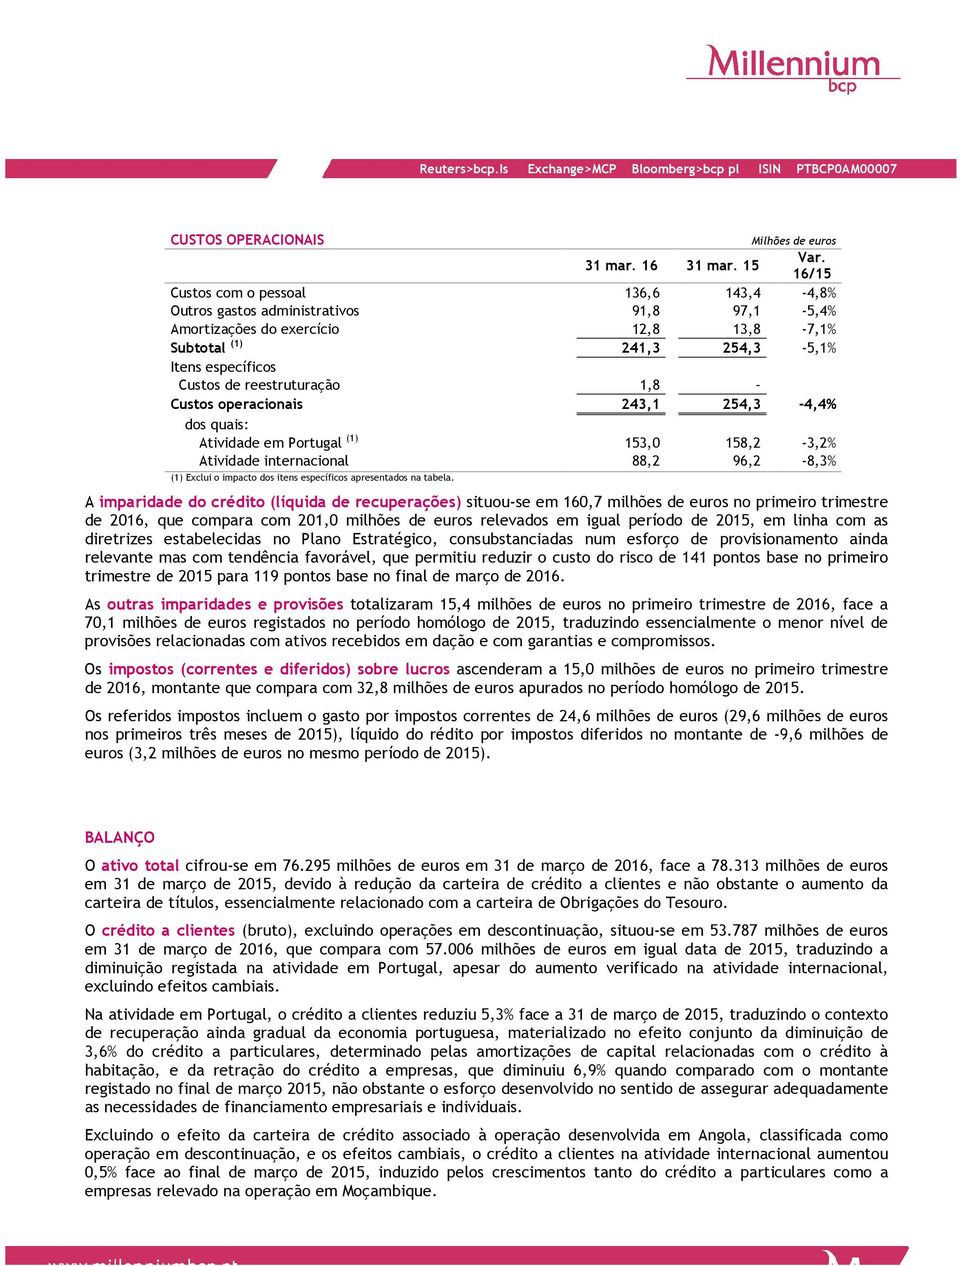 reestruturação 1,8 Custos operacionais 243,1 254,3-4,4% dos quais: Atividade em Portugal (1) 153,0 158,2-3,2% Atividade internacional 88,2 96,2-8,3% (1) Exclui o impacto dos itens específicos